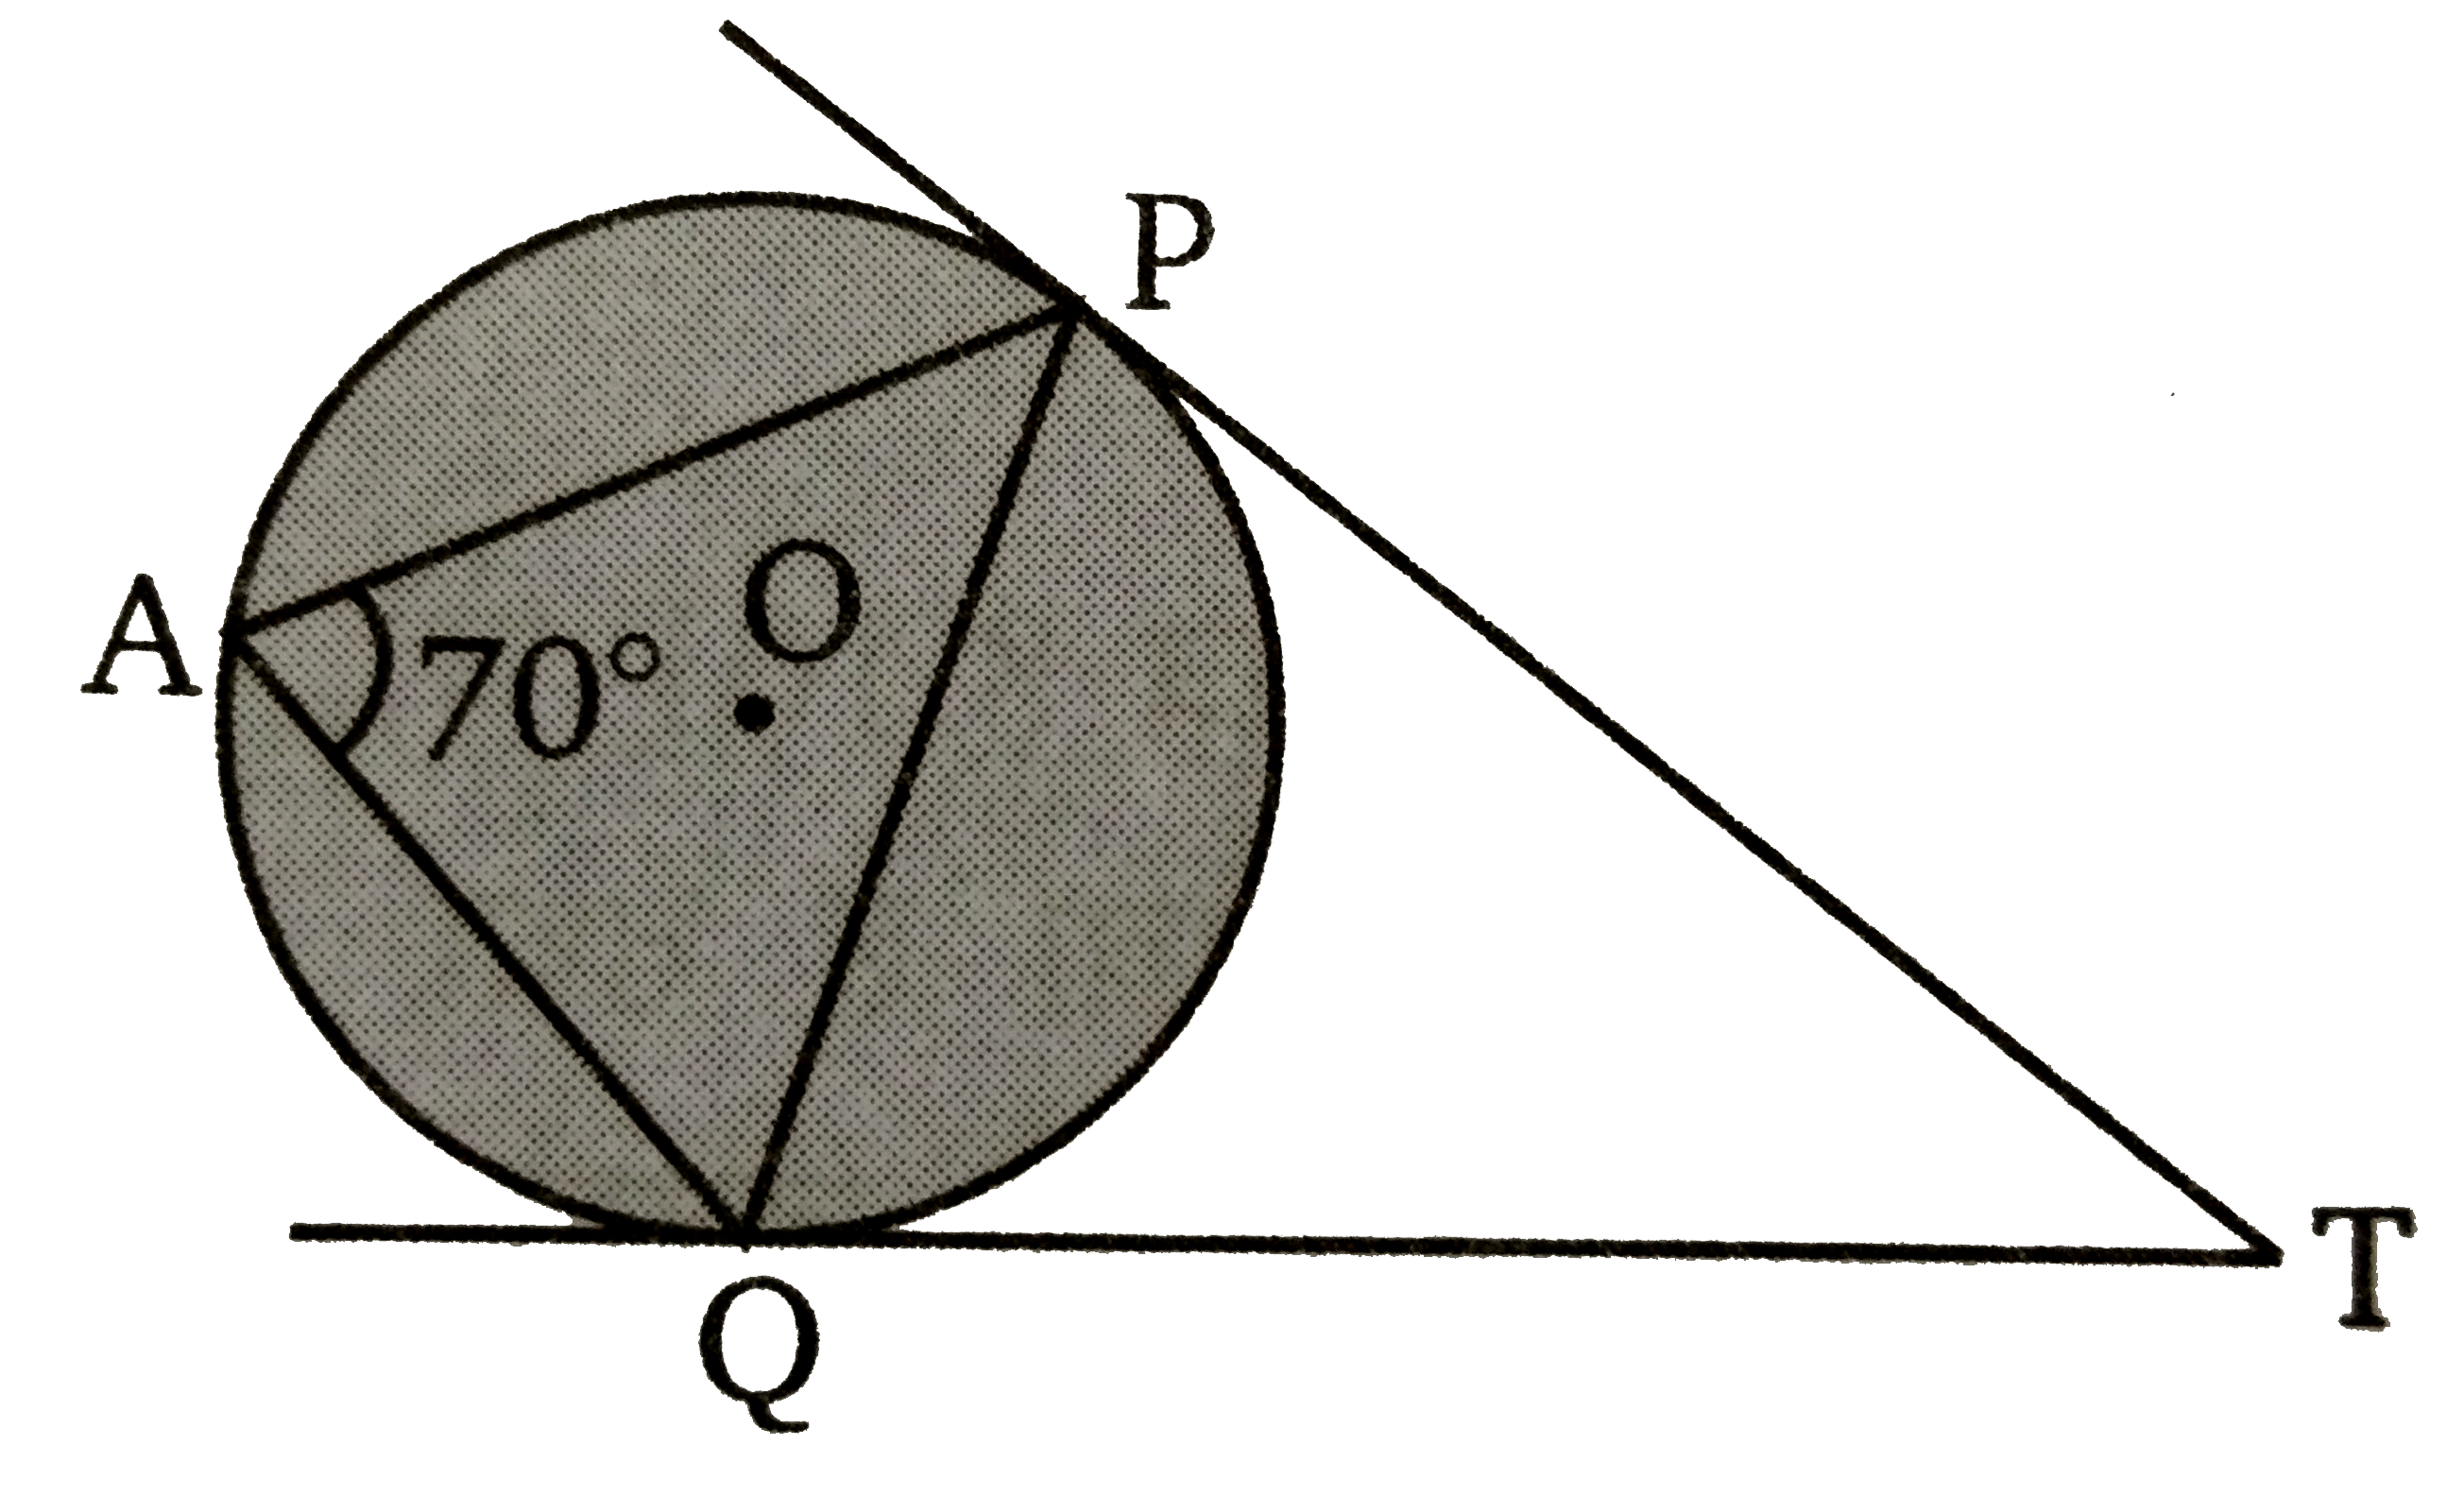 दिये गए चित्र में,  O वृत्त का केन्द्र है। वृत्त के बाहर एक बिन्दु T  से वृत्त पर दो स्पर्शी TP  व TQ  खींची गयी है। यहाँ स्पर्श जीवा वृत्त के शेष भाग से angle PAQ = 70^(@)  बनाती है। तब दोनों स्पर्शियाँ के बीच का कोण ज्ञात कीजिए ।